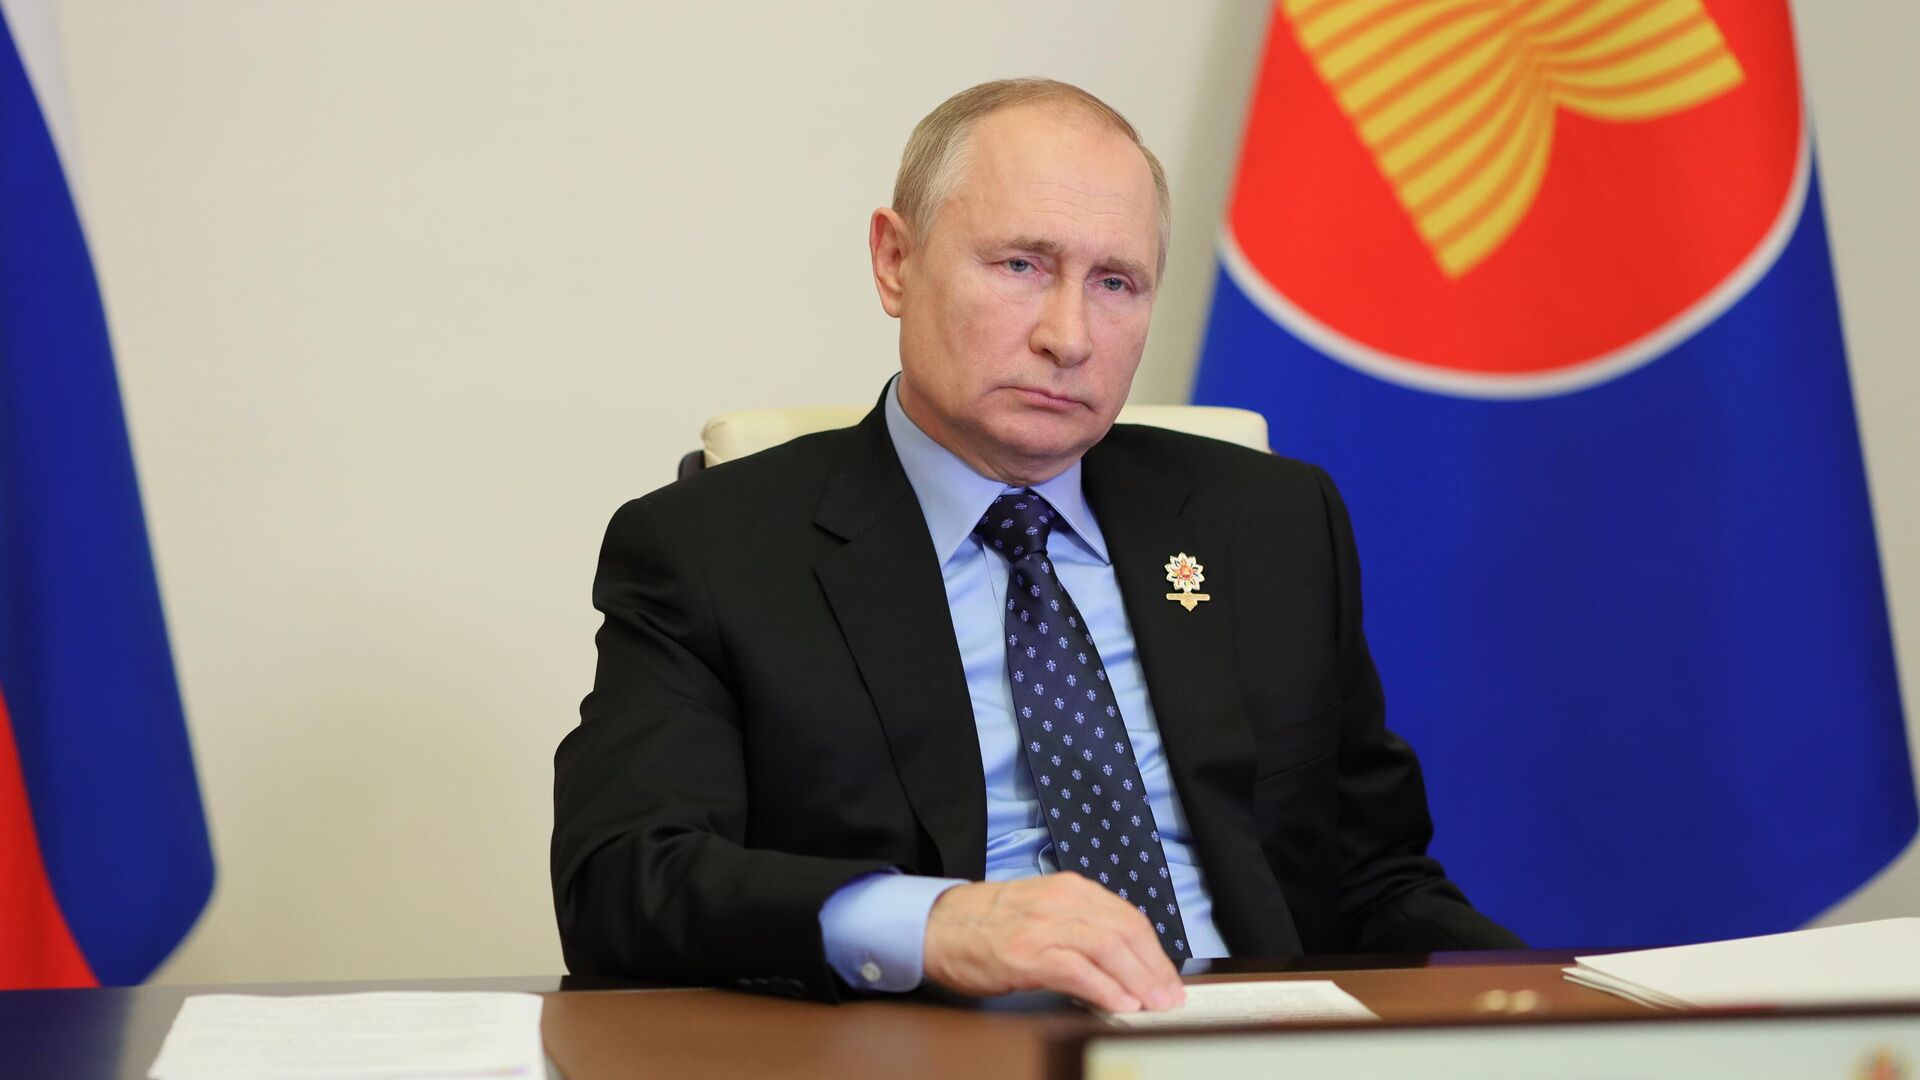 "Путин — главный в Европе". Британцы оценили поручение президента России